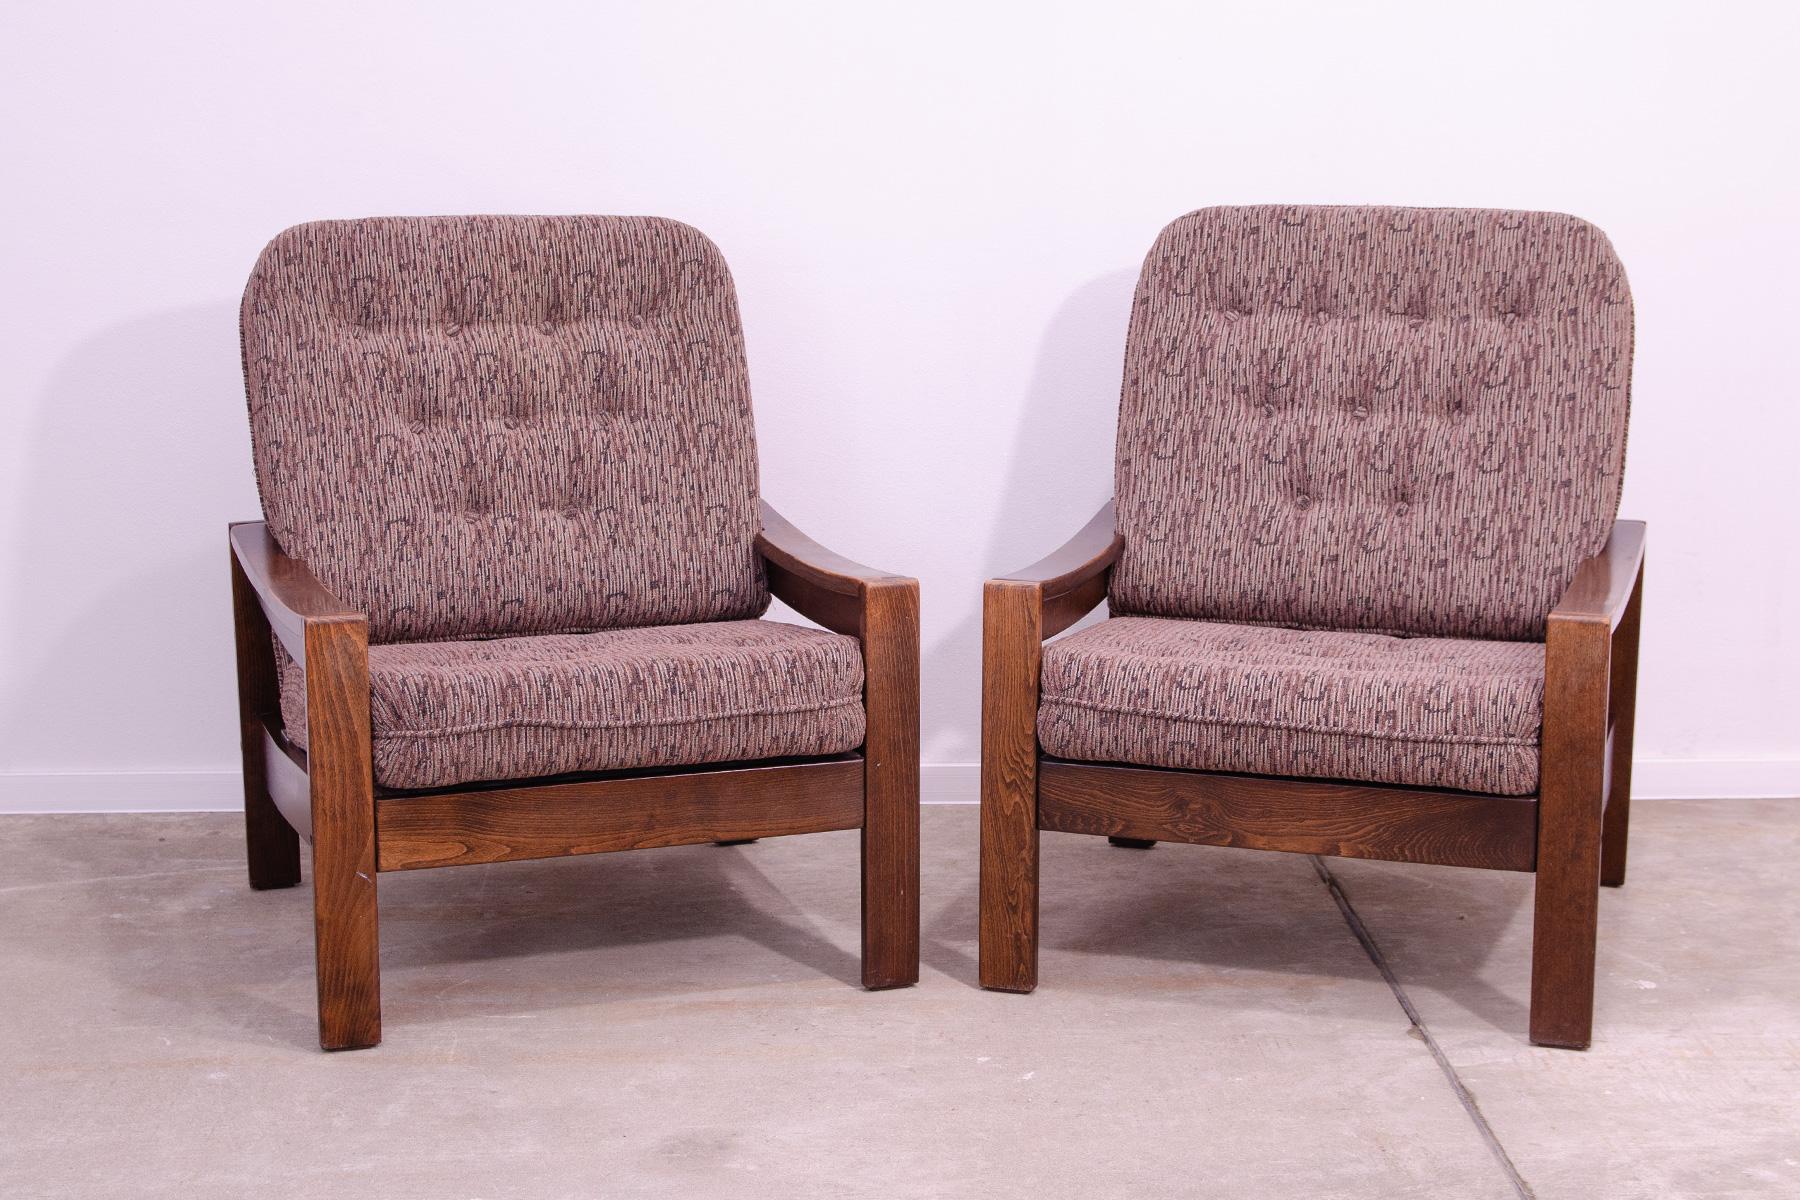 Diese Sessel wurden in der ehemaligen Tschechoslowakei in den 1980er Jahren hergestellt.
Die Stühle sind aus Buchenholz und die Kissen sind mit Stoff gepolstert.
Sie sind in einem sehr guten Vintage-Zustand ohne Beschädigungen und weisen leichte